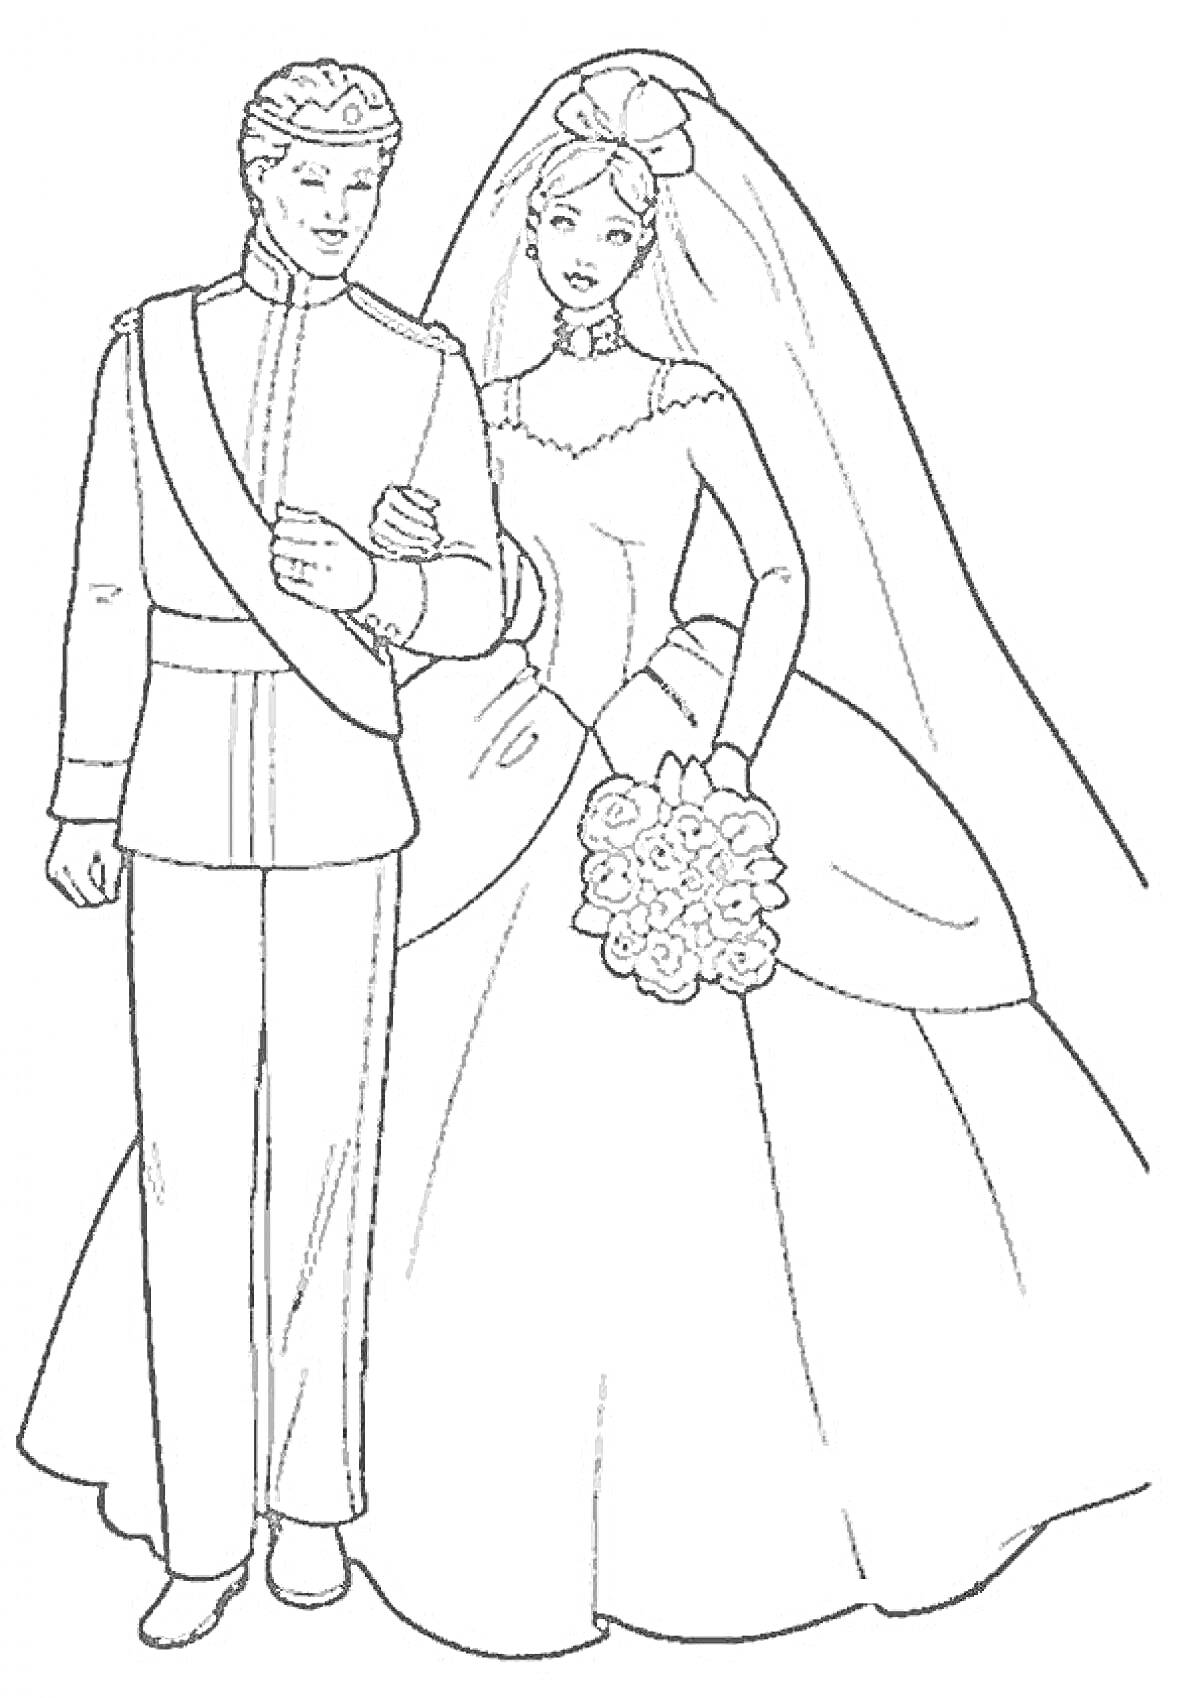 Раскраска Принц и принцесса на свадьбе, принц в форме с эполетом, принцесса в свадебном платье с букетом цветов